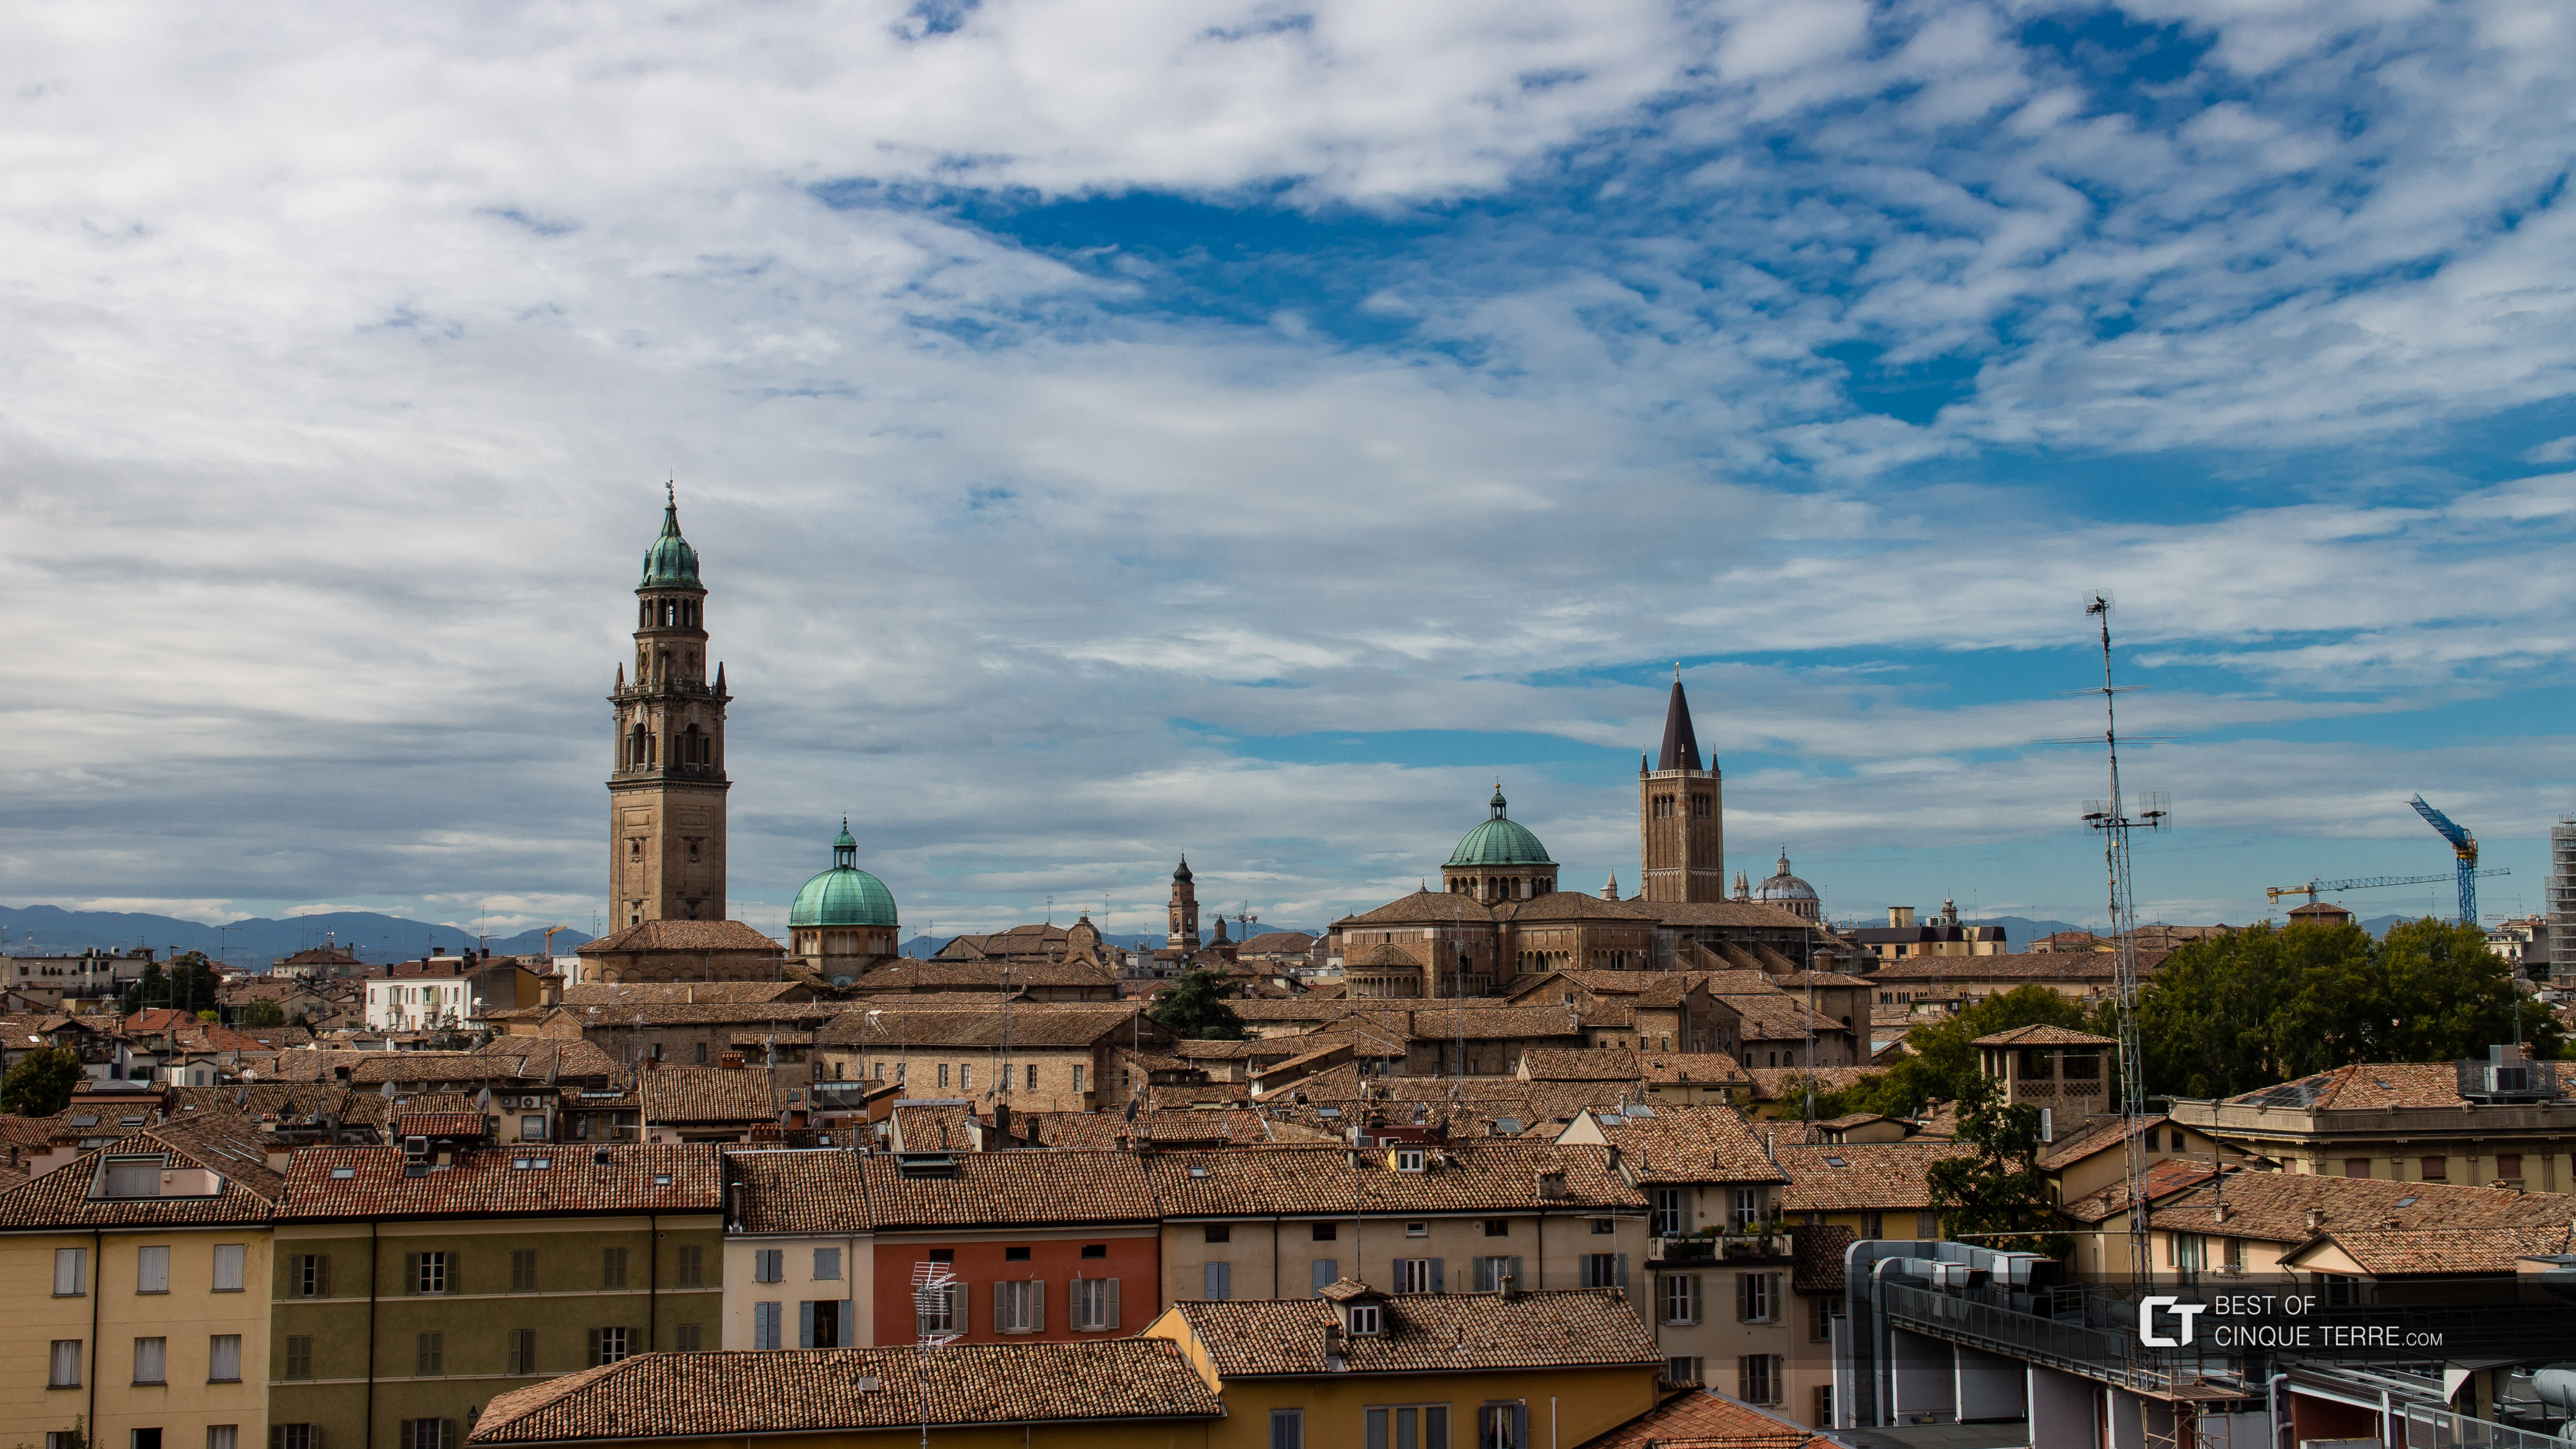 Los techos del centro histórico, Parma, Italia